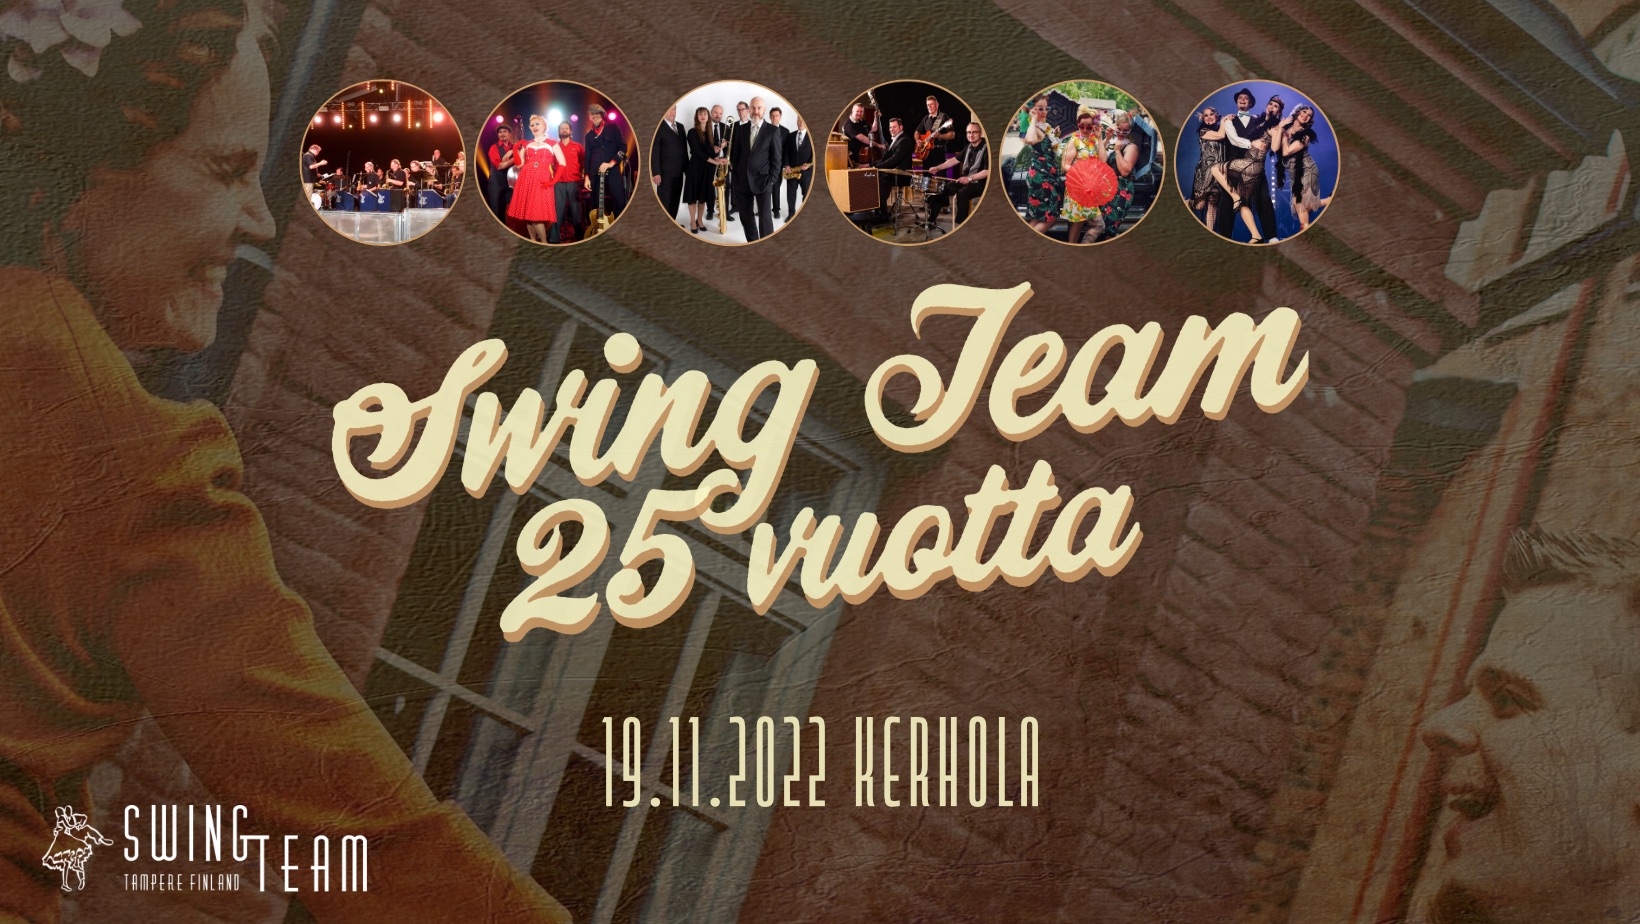 Swing Team 25 vuotta -juhlagaala 19.11.2022